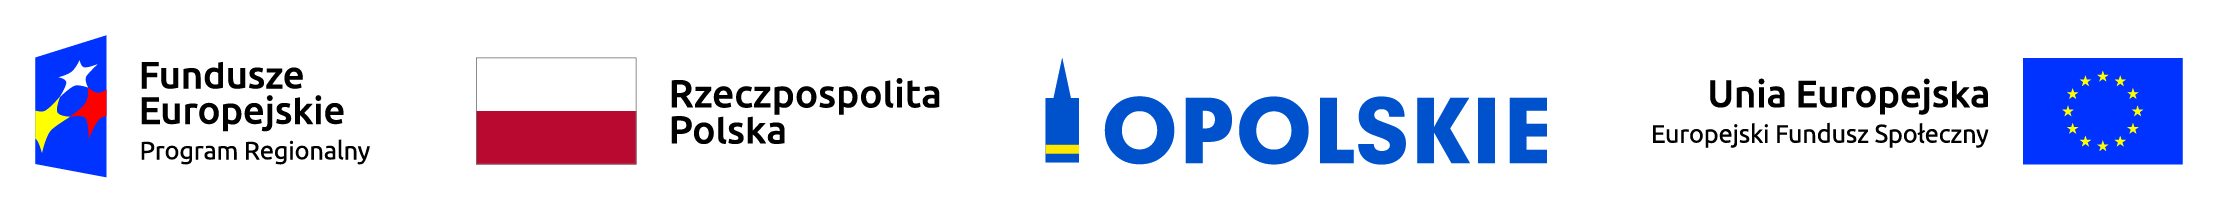 Logo: Fundusze Europejskie Program Regionalny, flaga Polski, Opolskie, Unia Europejska Europejski Fundusz Społeczny